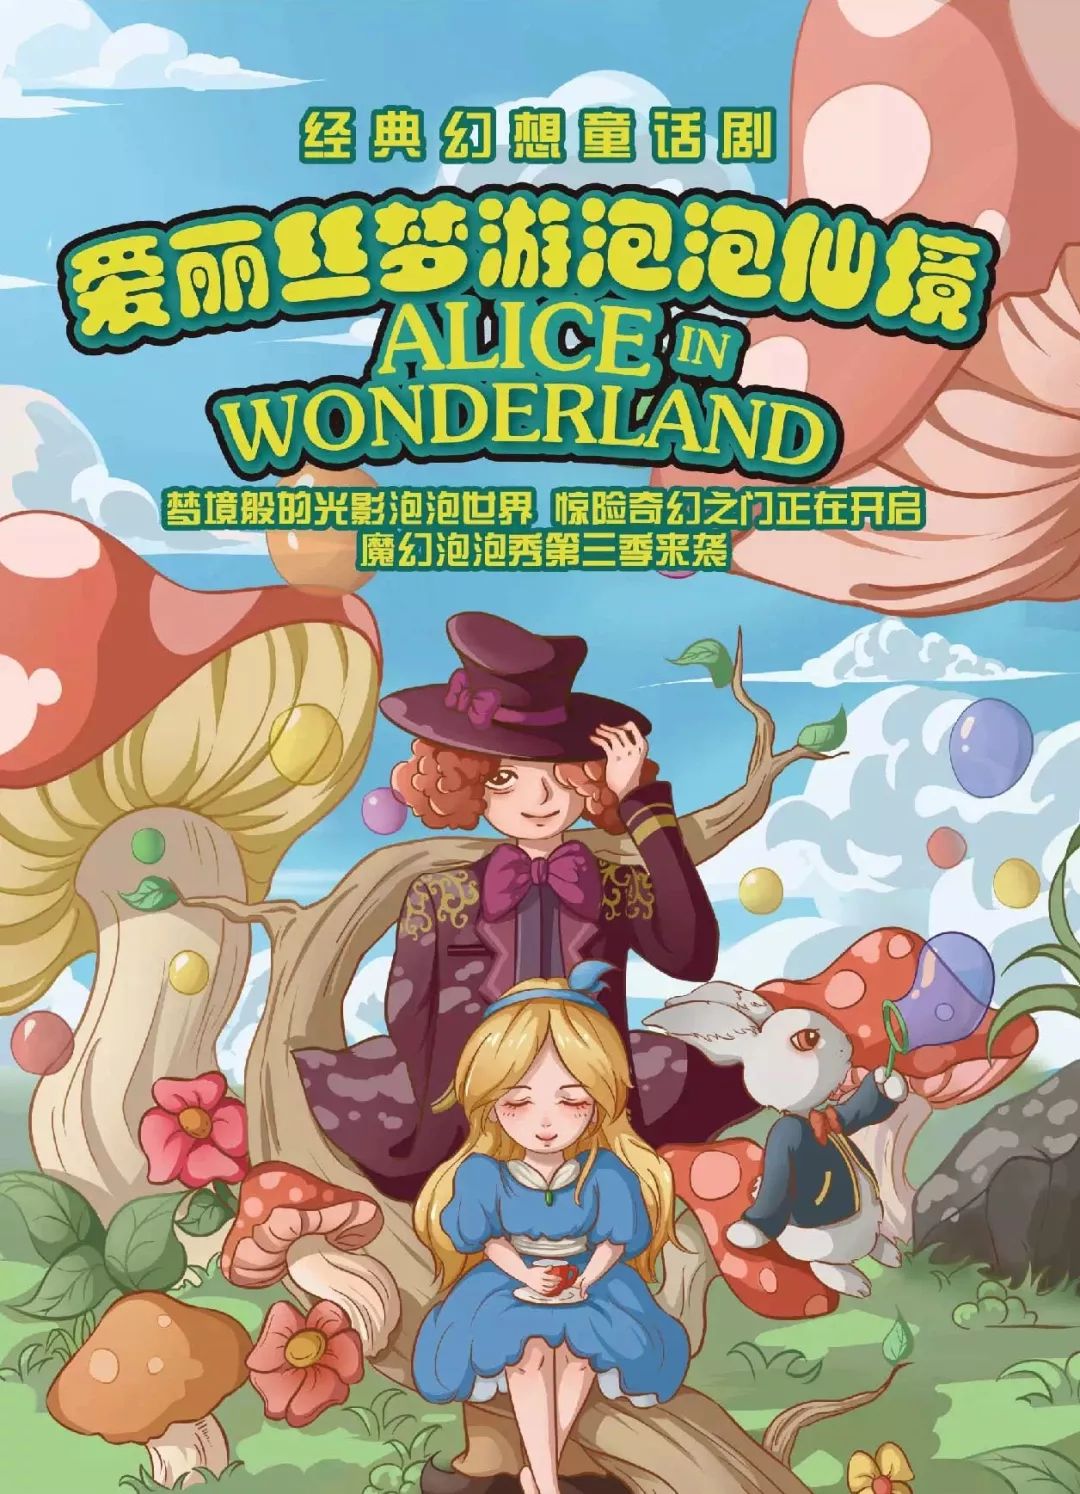 【公益儿童剧】《爱丽丝梦游泡泡仙境》与爱丽丝一起开启梦幻之旅吧!